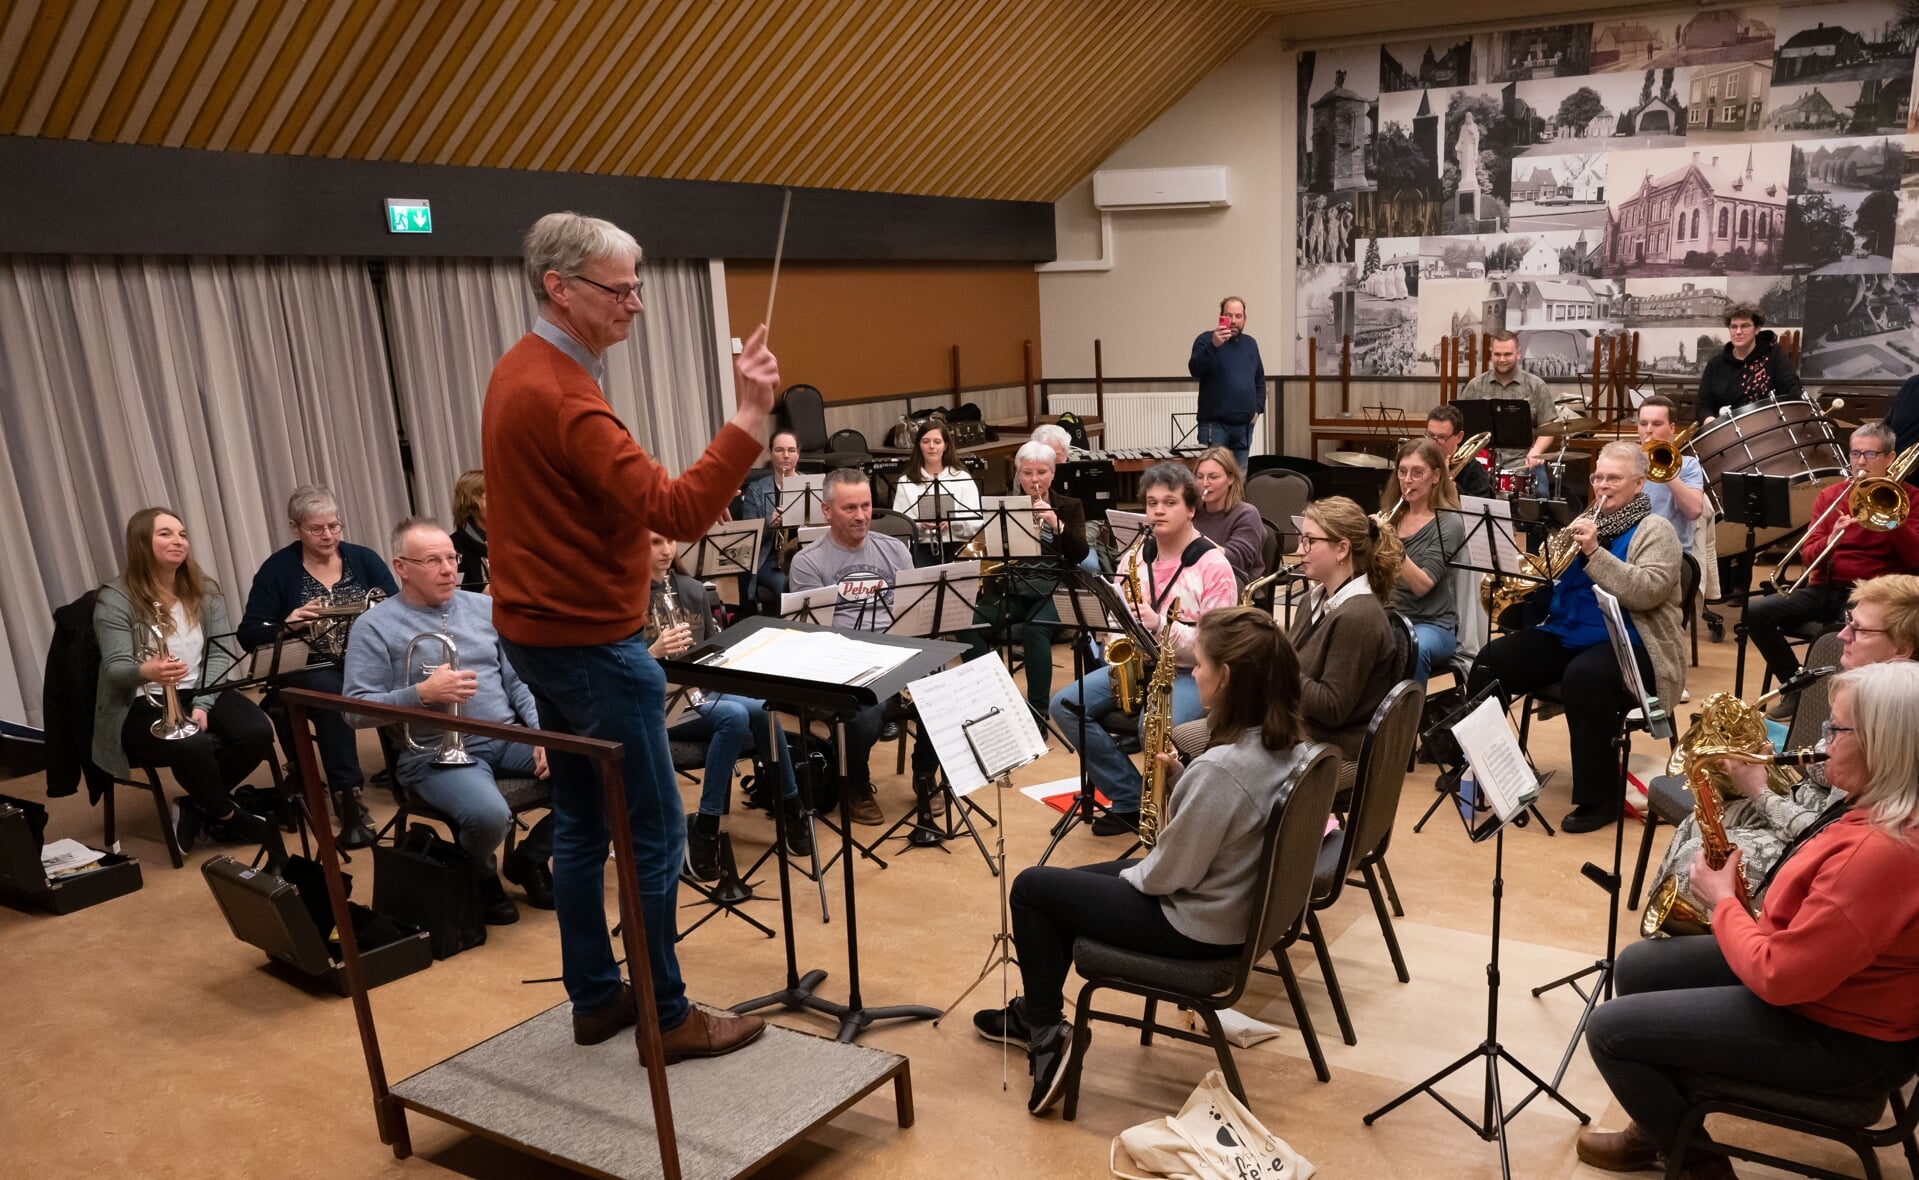 Hans van Bussel oefent zijn muziekstuk met orkest. Zijn concurrent Rick van de Ven staat achterin alvast foto's en filmpjes te maken, waarschijnlijk voor de technische analyse...